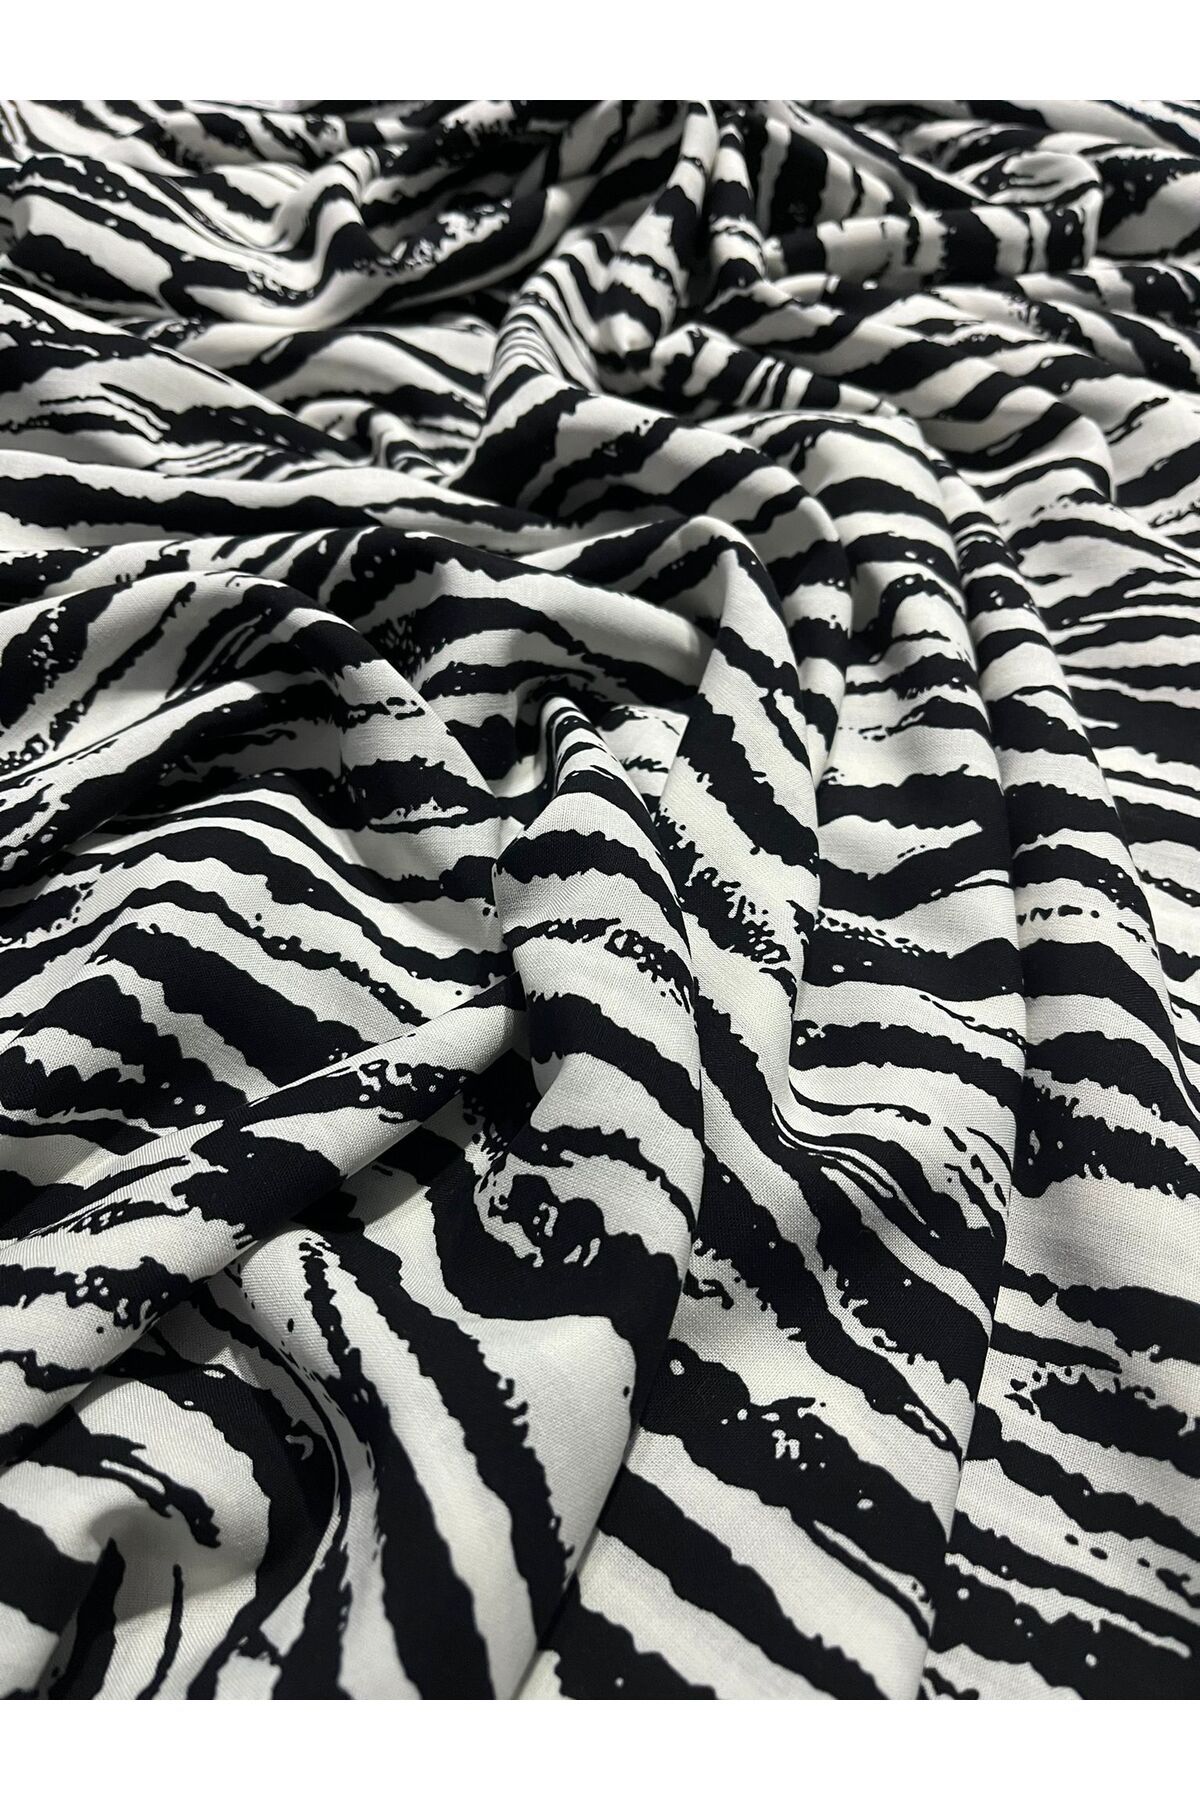 Aslan Online Çift En 150 Cm Elbise Etek Gömlek Ve Kimono Dikimine Zebra Desenli Pamuklu Viskon